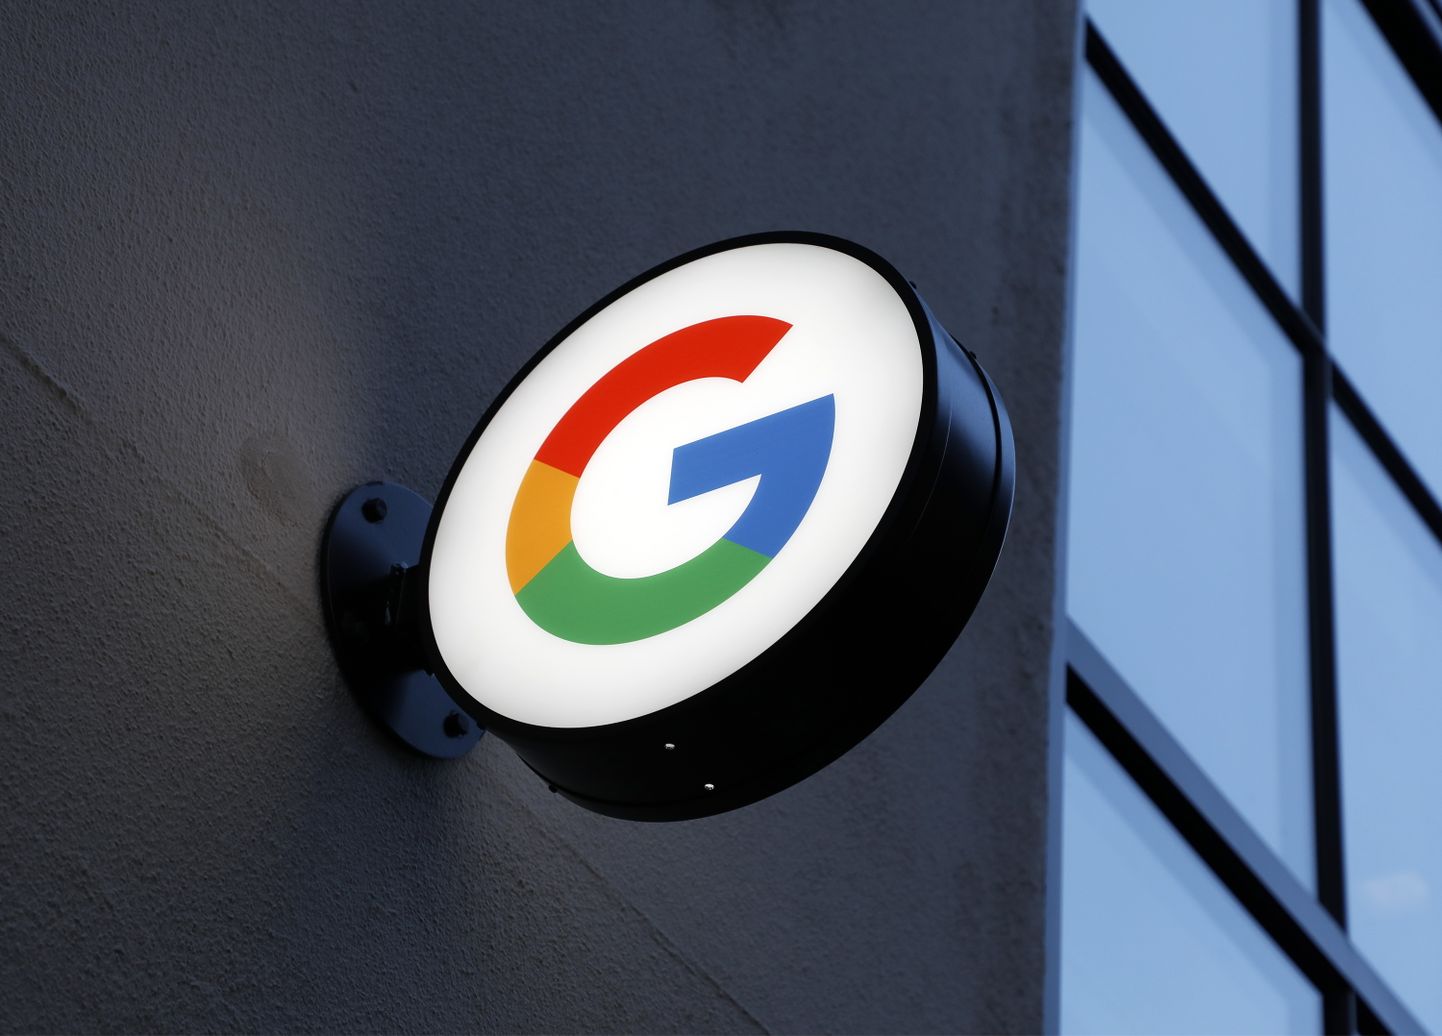 Euroopa Komisjon kahtlustab, et Google on rikkunud bloki konkurentsireegleid läbi enda reklaamitehnoloogia teenuste soosimise konkurentide arvelt.